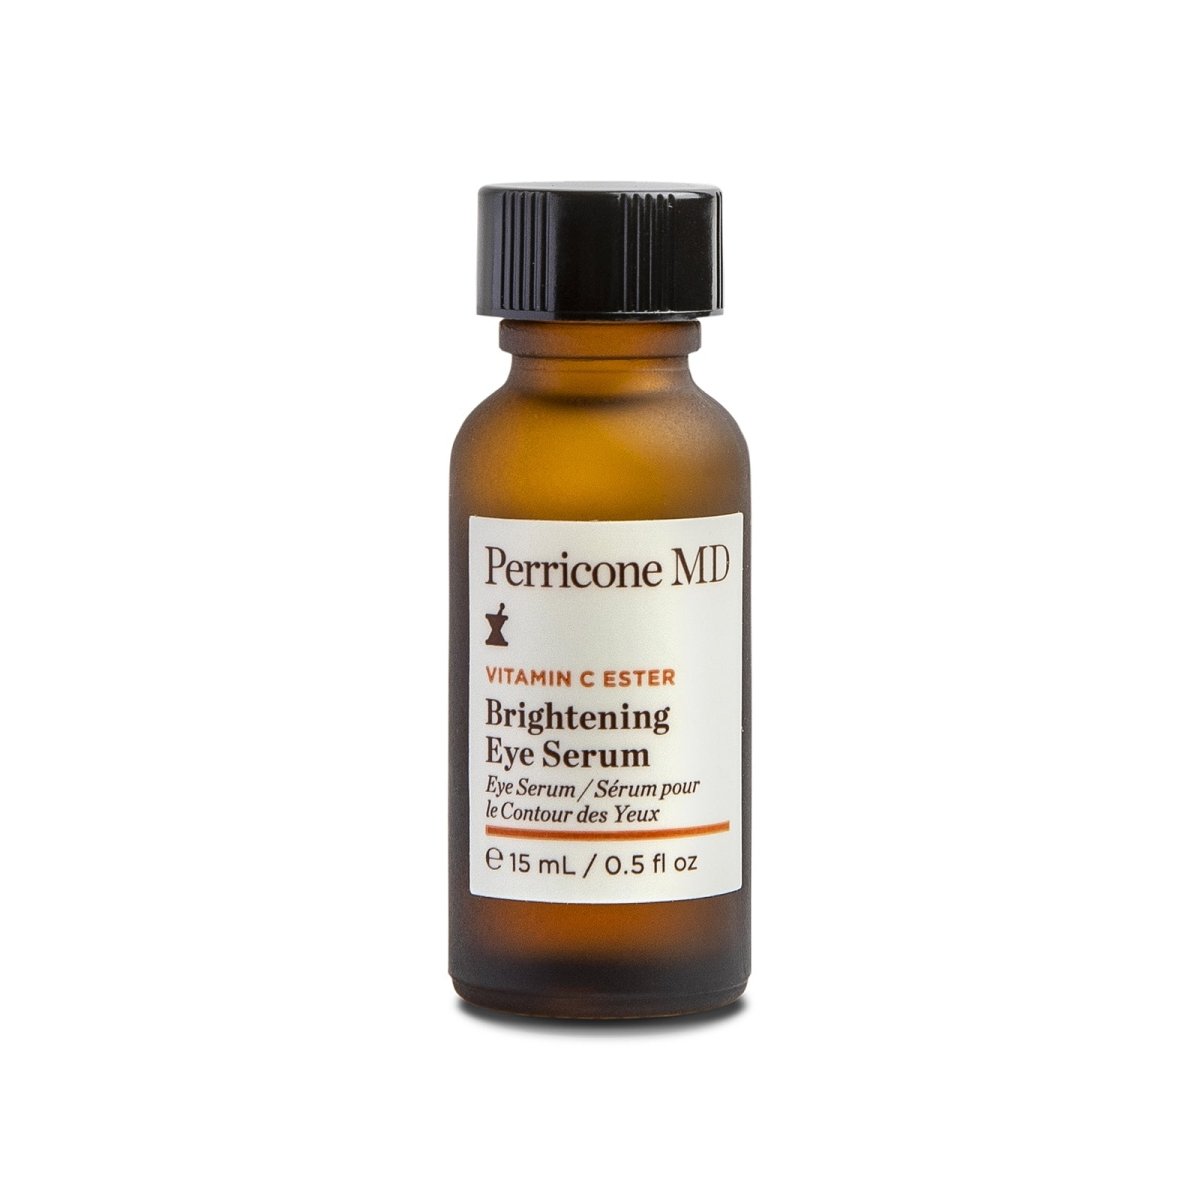 Perricone MD Vitamin C Ester Brightening Eye Serum - SkincareEssentials